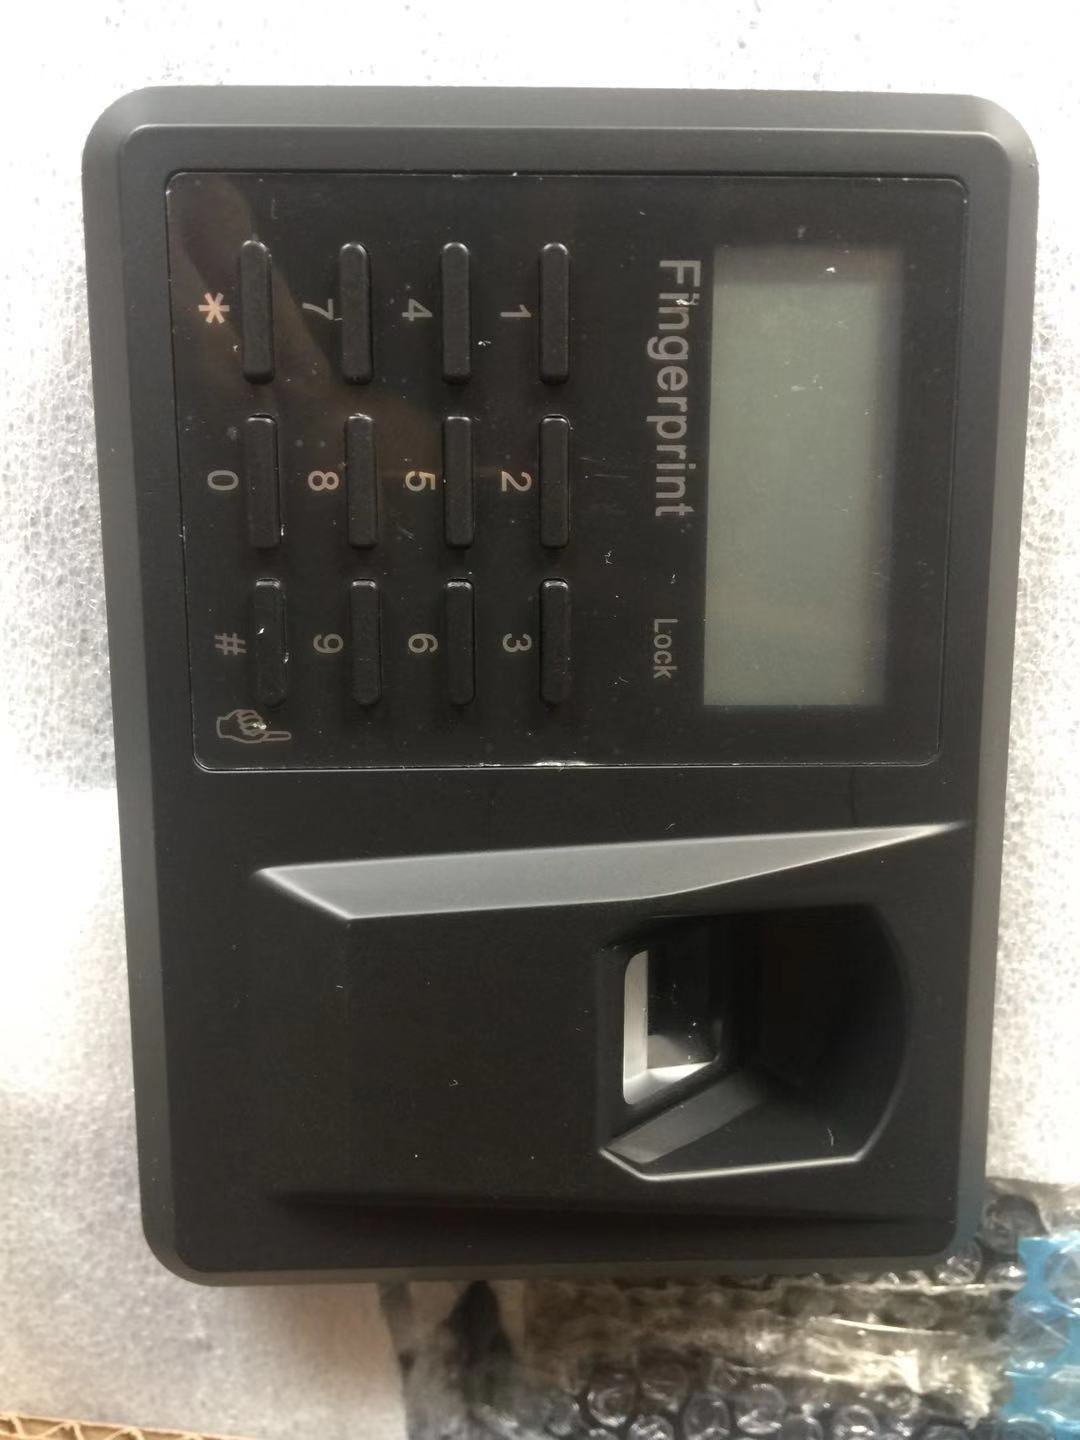 Пин-код клавиатуры биометрический комплект для безопасной фиксации отпечатков пальцев